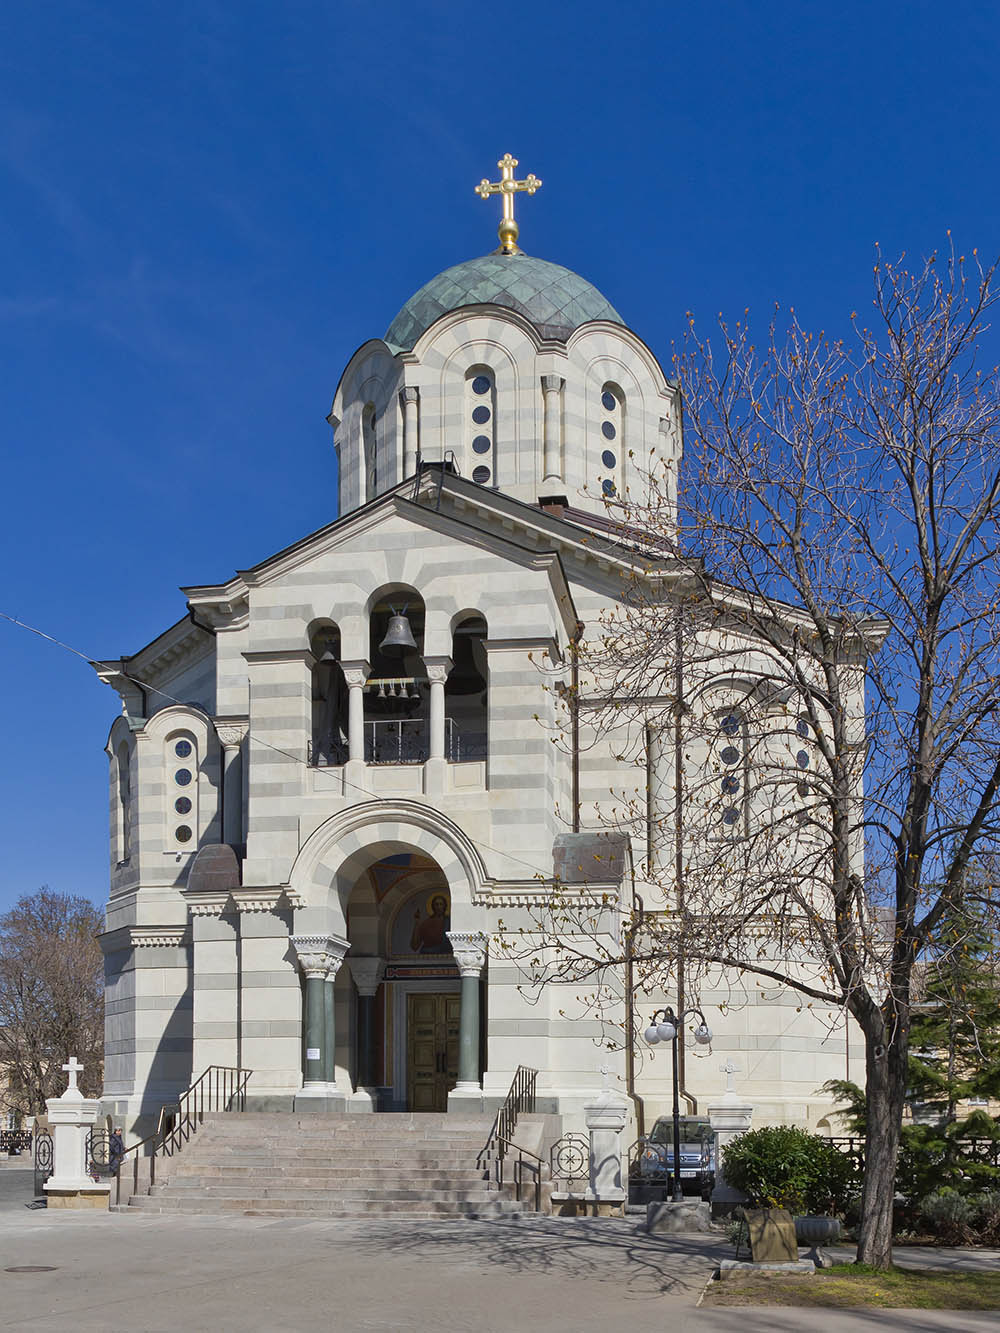 St. Vladimir Kathedraal